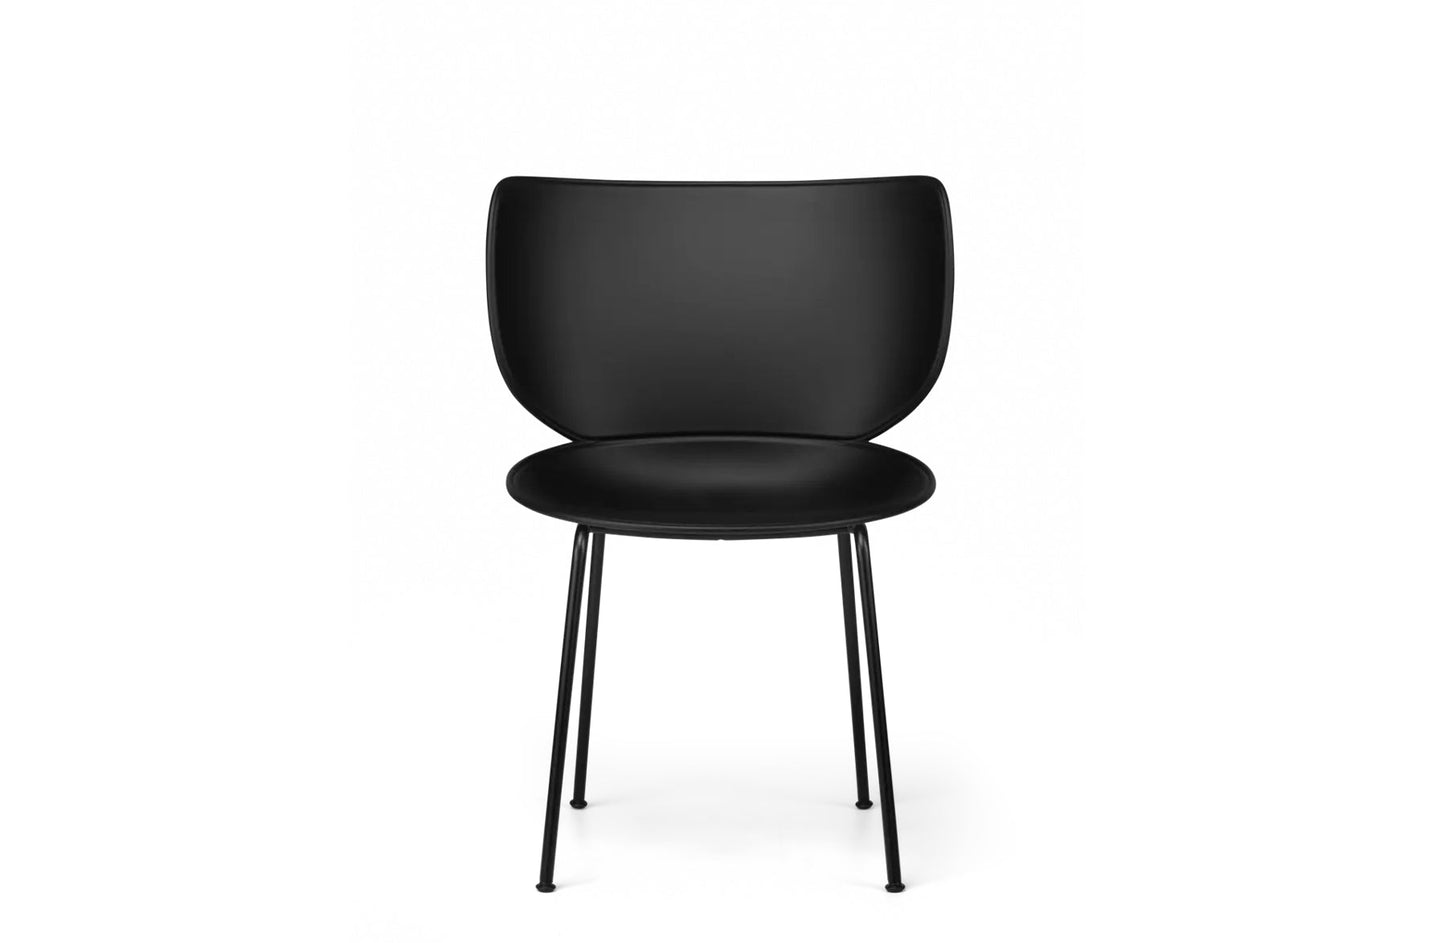 Hana Chair Un-Upholstered
